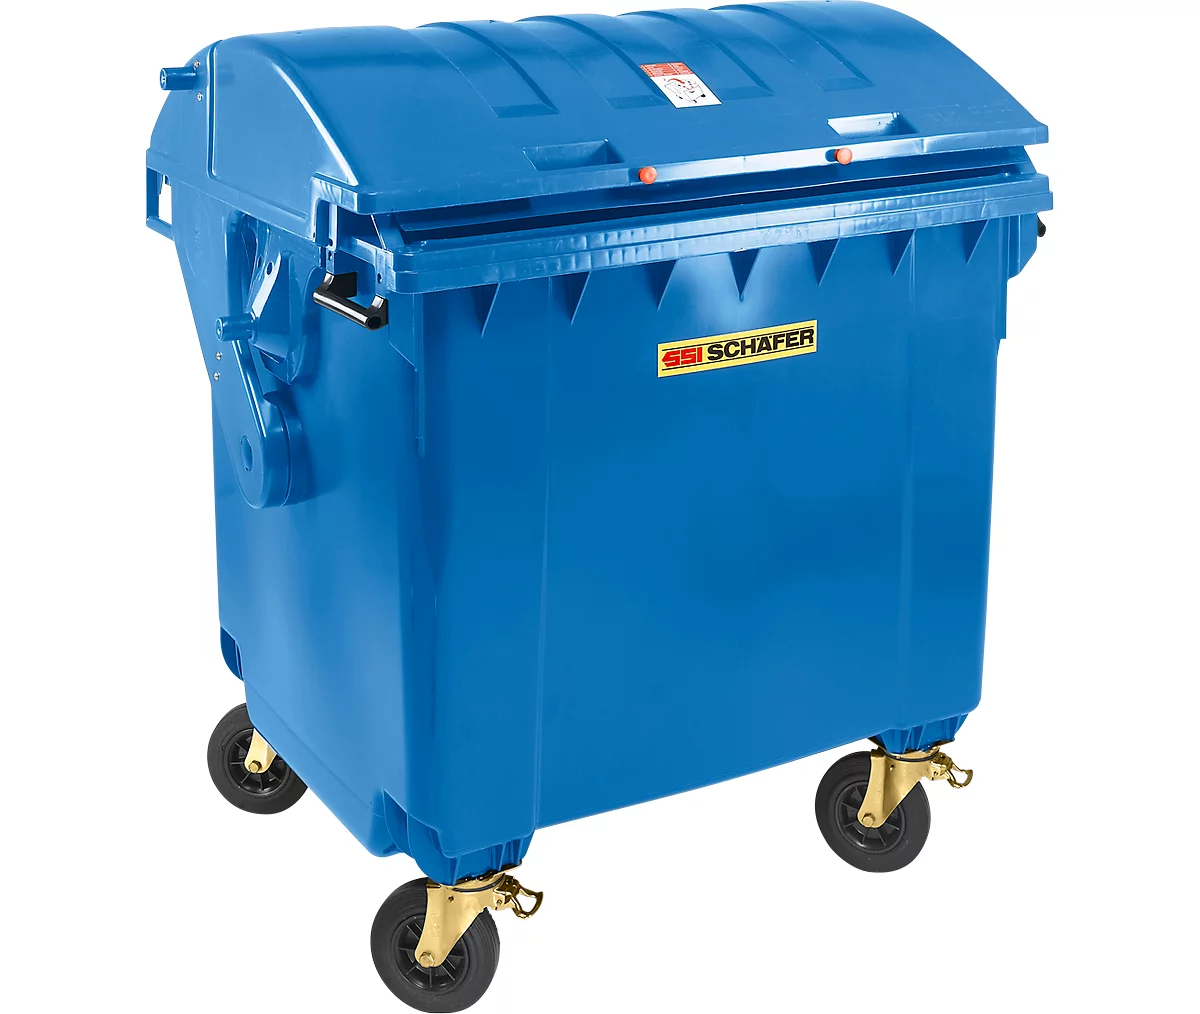 Contenedor de basura MGB 1100 RD, plástico, tapa redondeada, 1100 l, azul